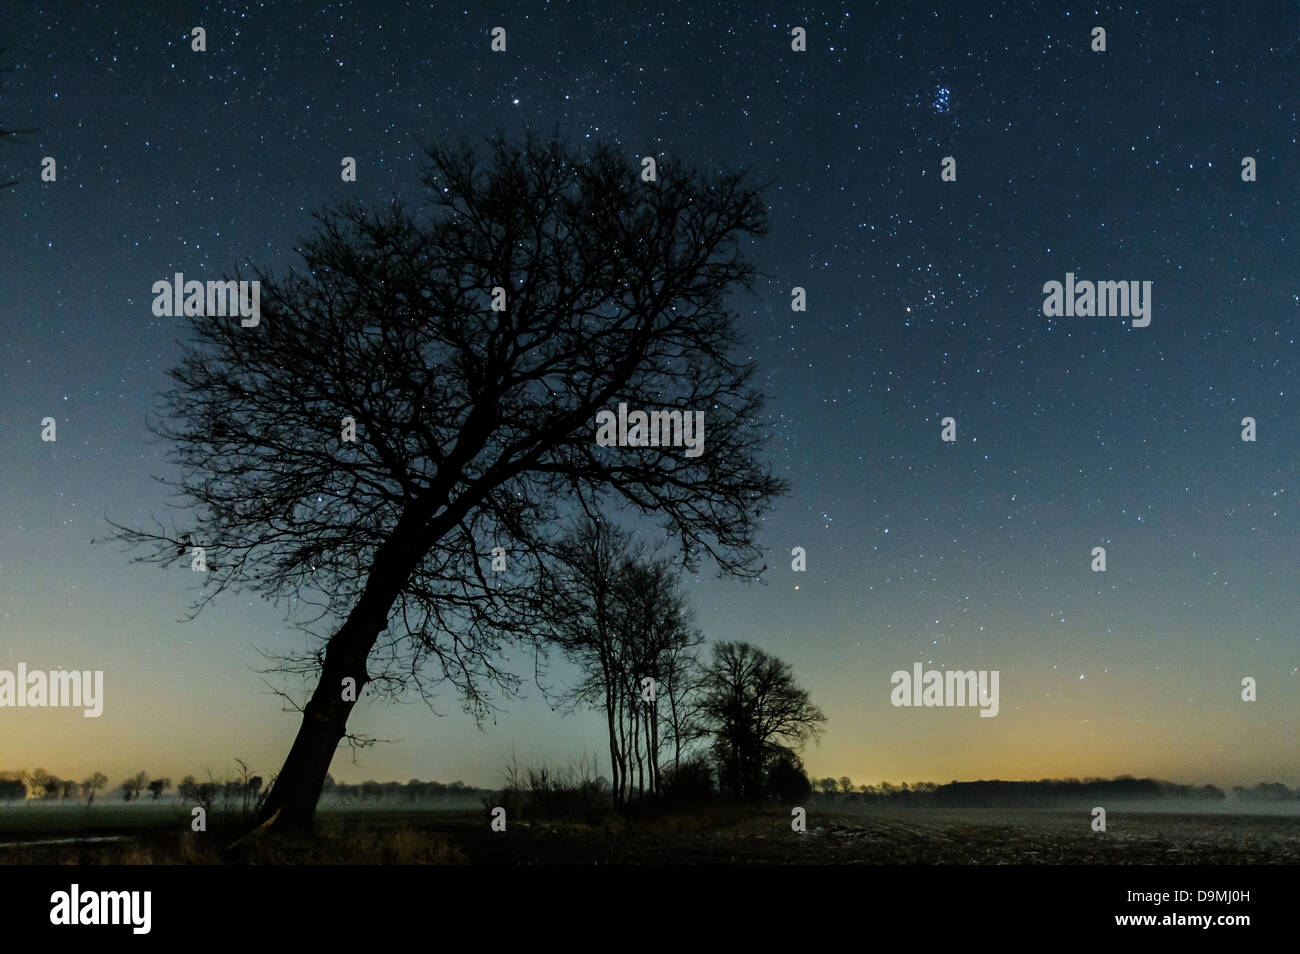 Sternenhimmel, stairy, Sterne, Nacht, Baum, malerische Stockfoto